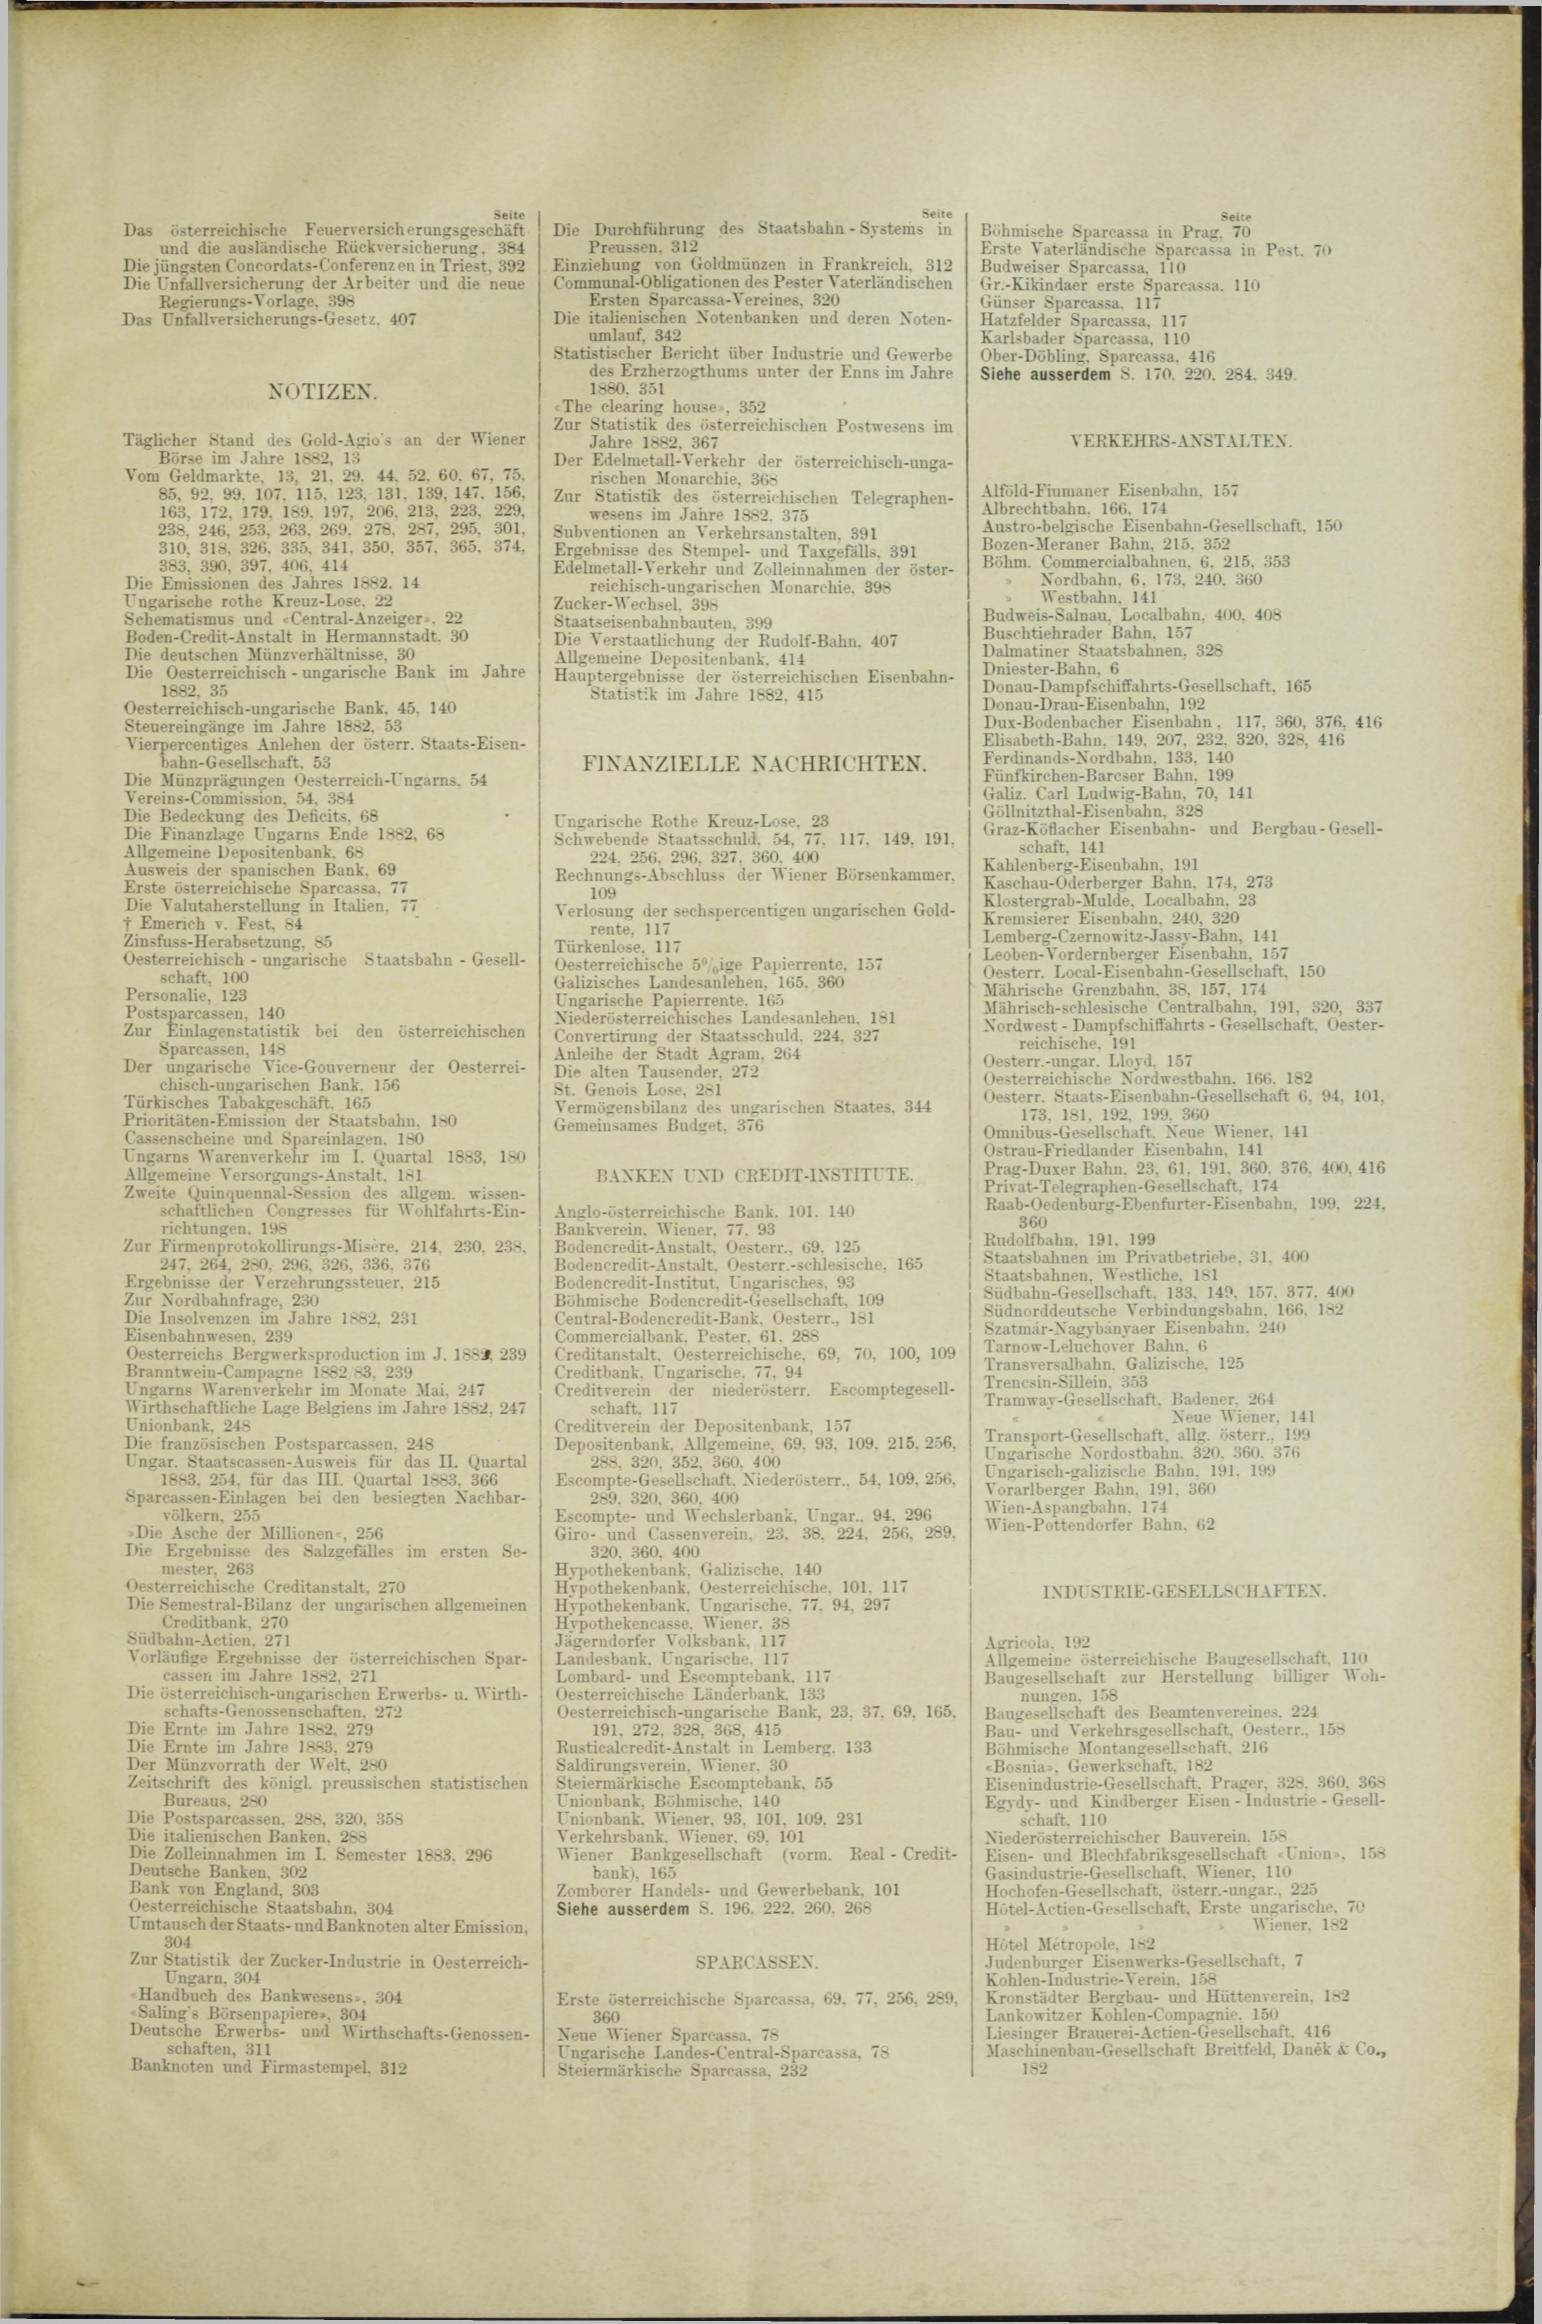 Der Tresor 19.04.1883 - Seite 11